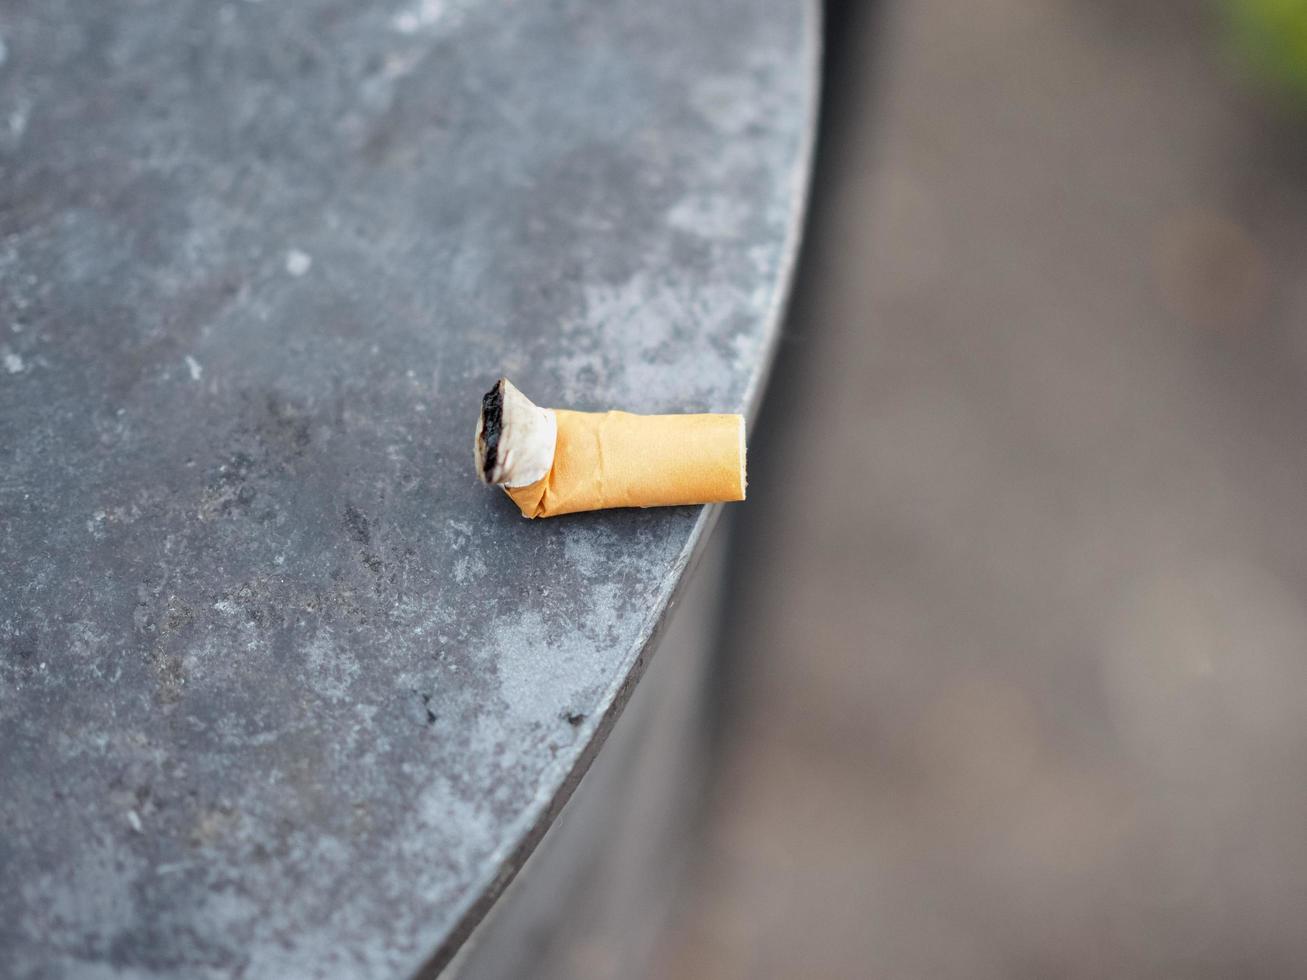 Cigarette butt waste photo